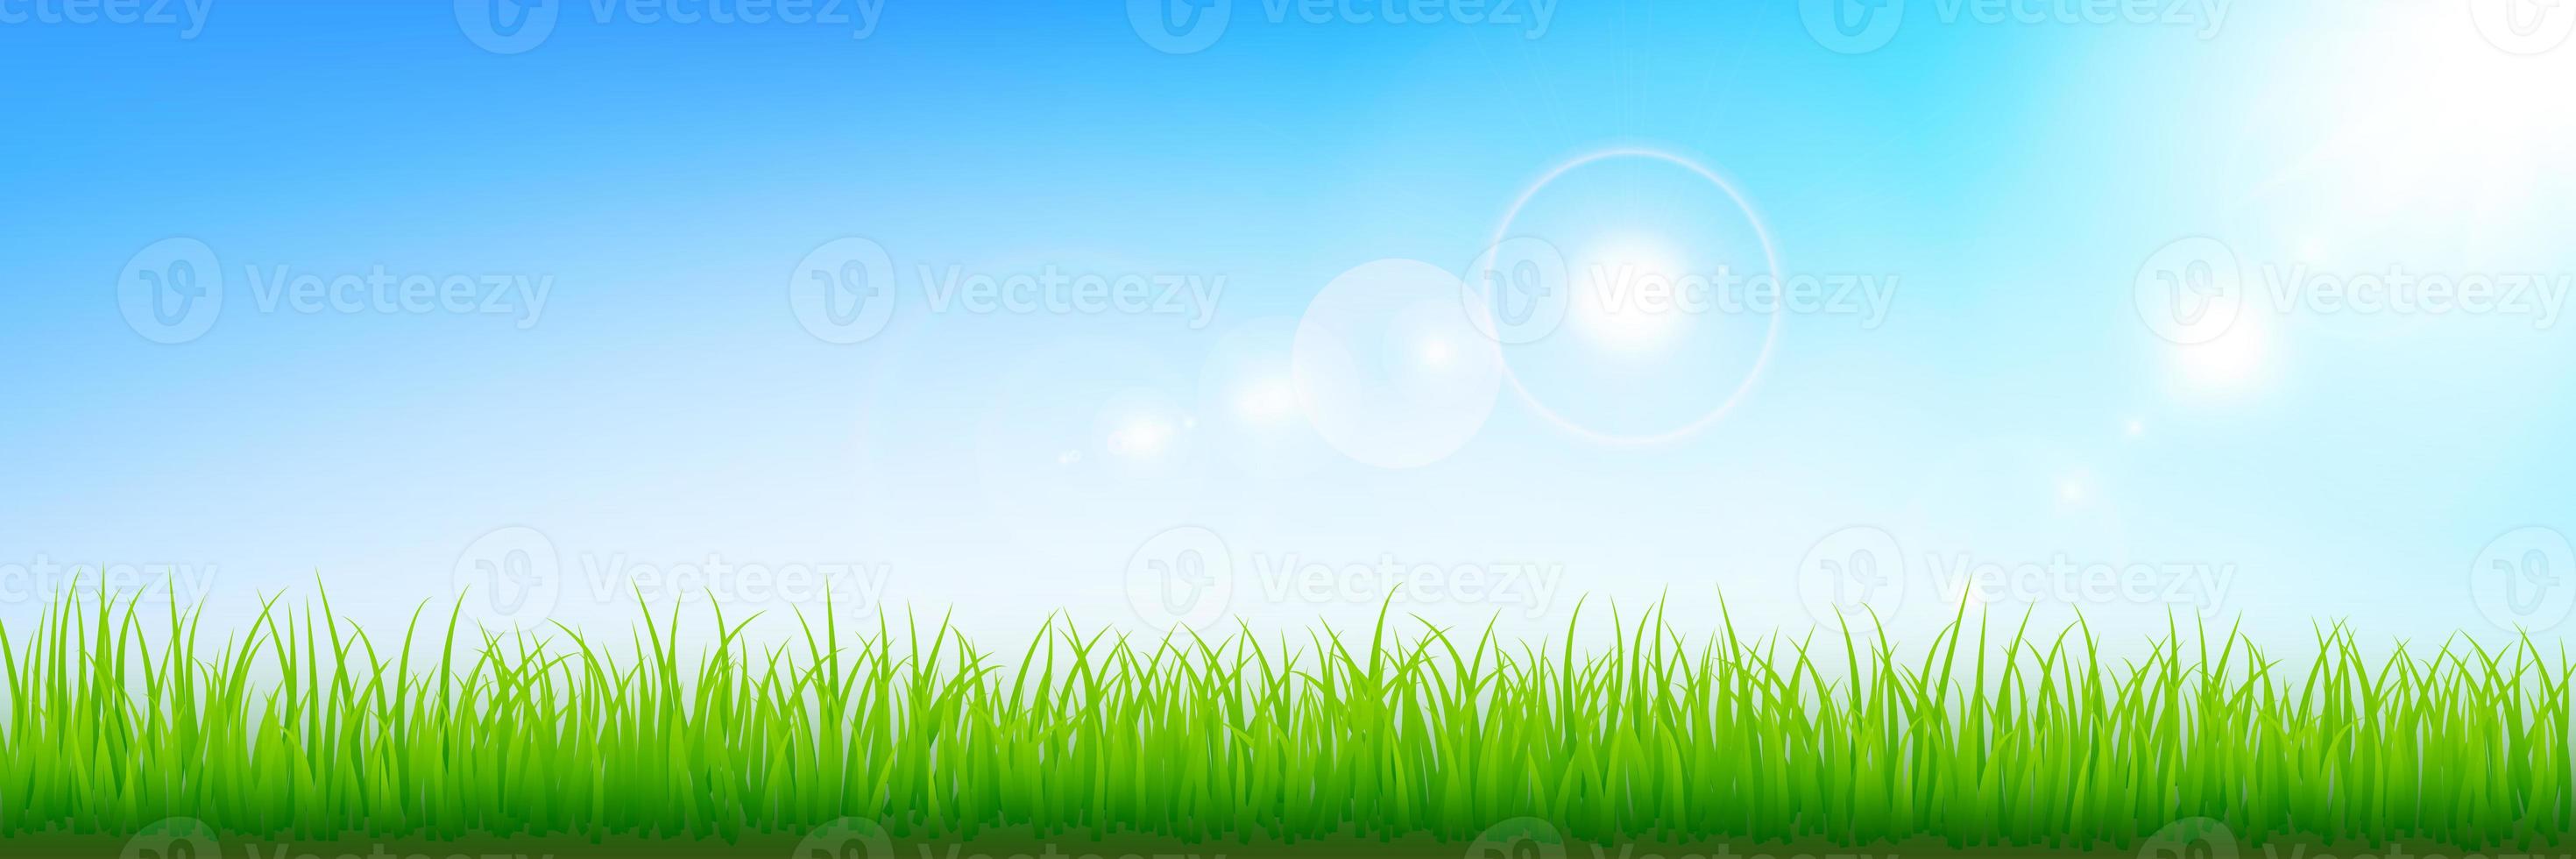 geïllustreerde achtergrond met grasrand en zonlicht tegen blauwe hemel. illustreren hemelscène. foto